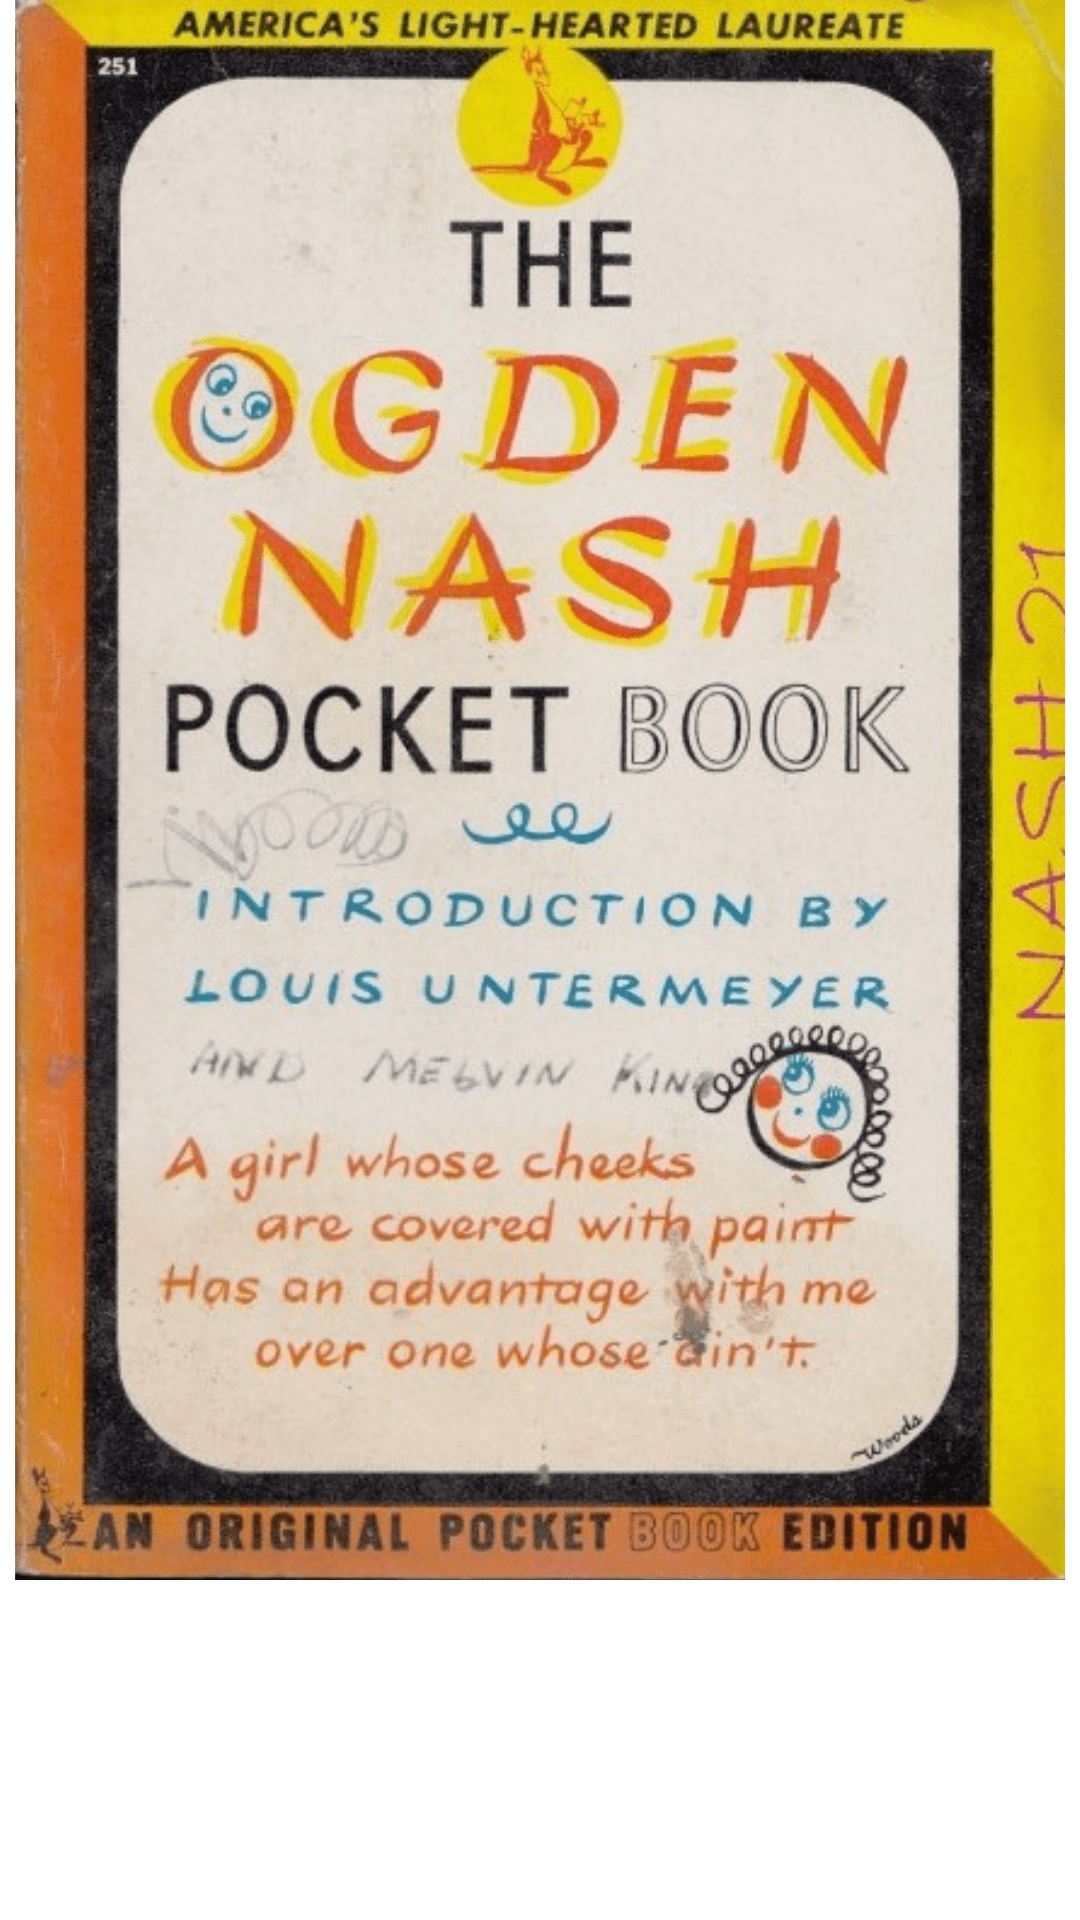 The Ogden Nash Pocket Book